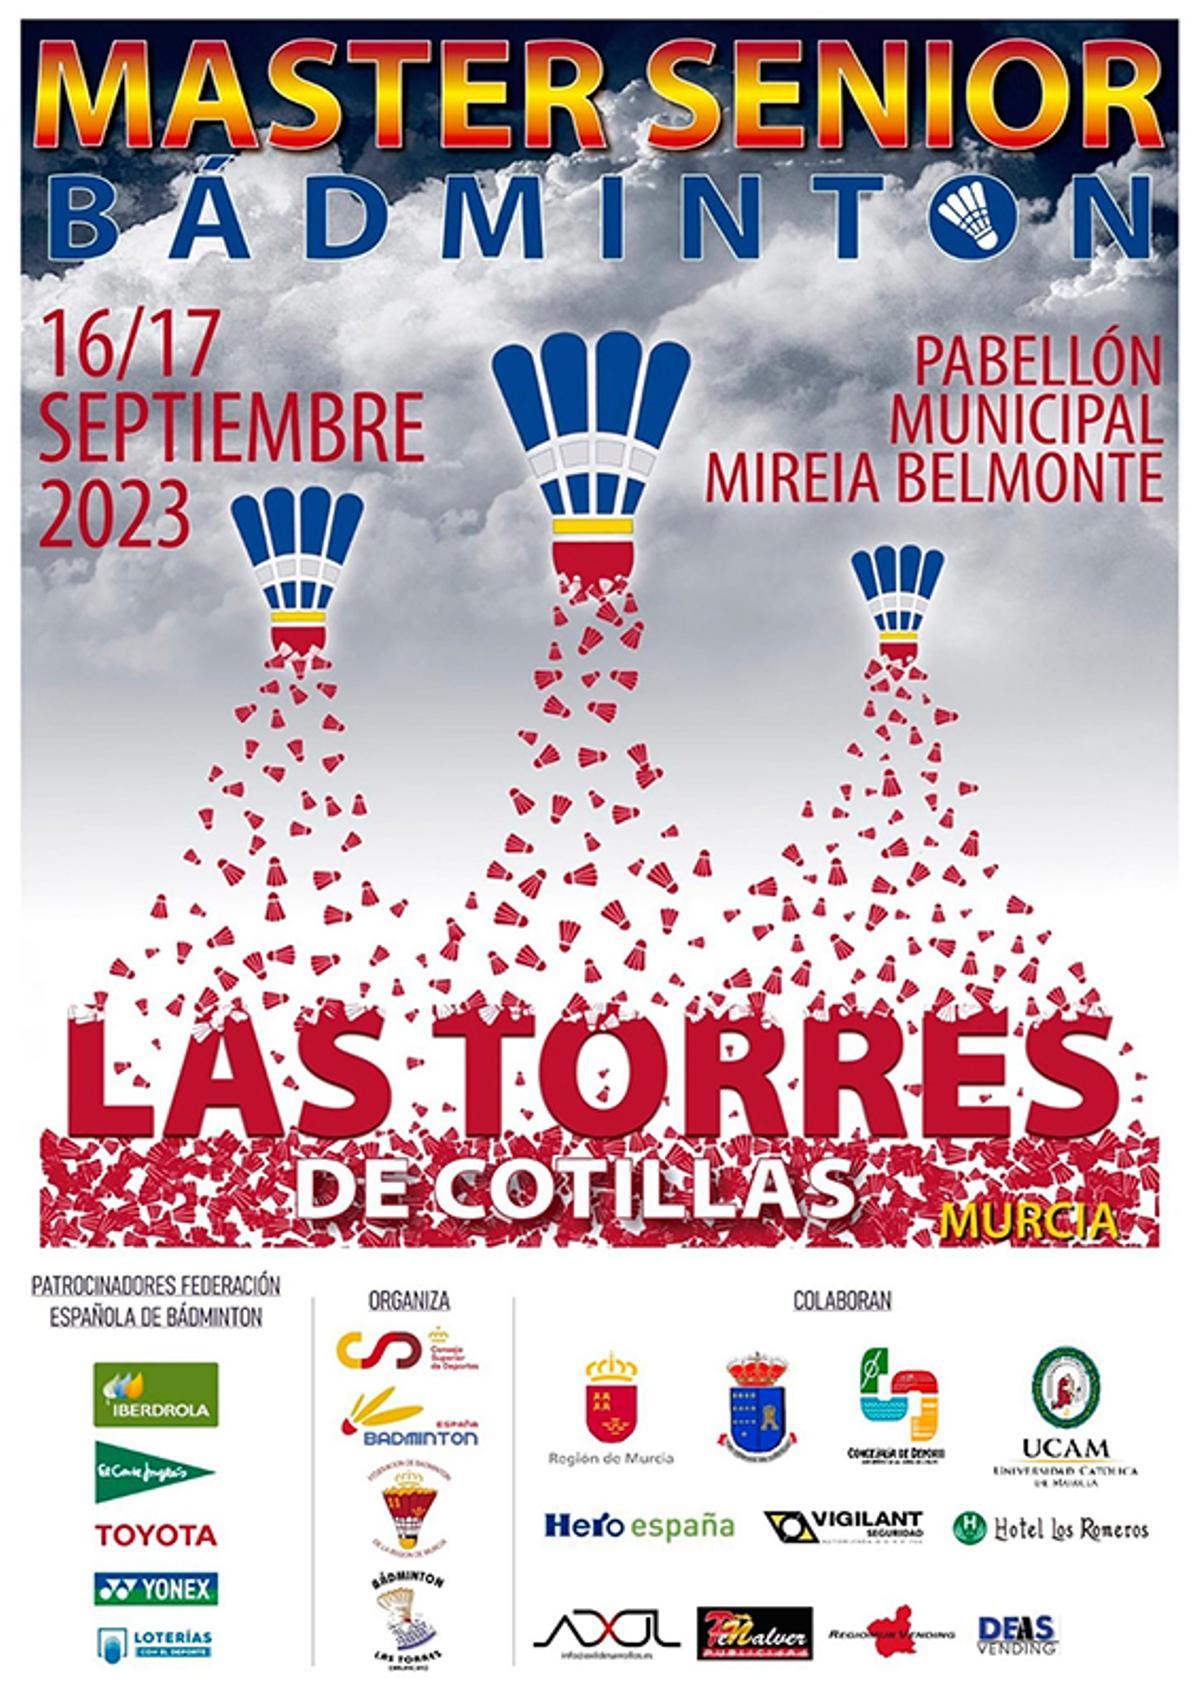 Cartel anunciador del Máster Sénior de Las Torres de Cotilla (Murcia).